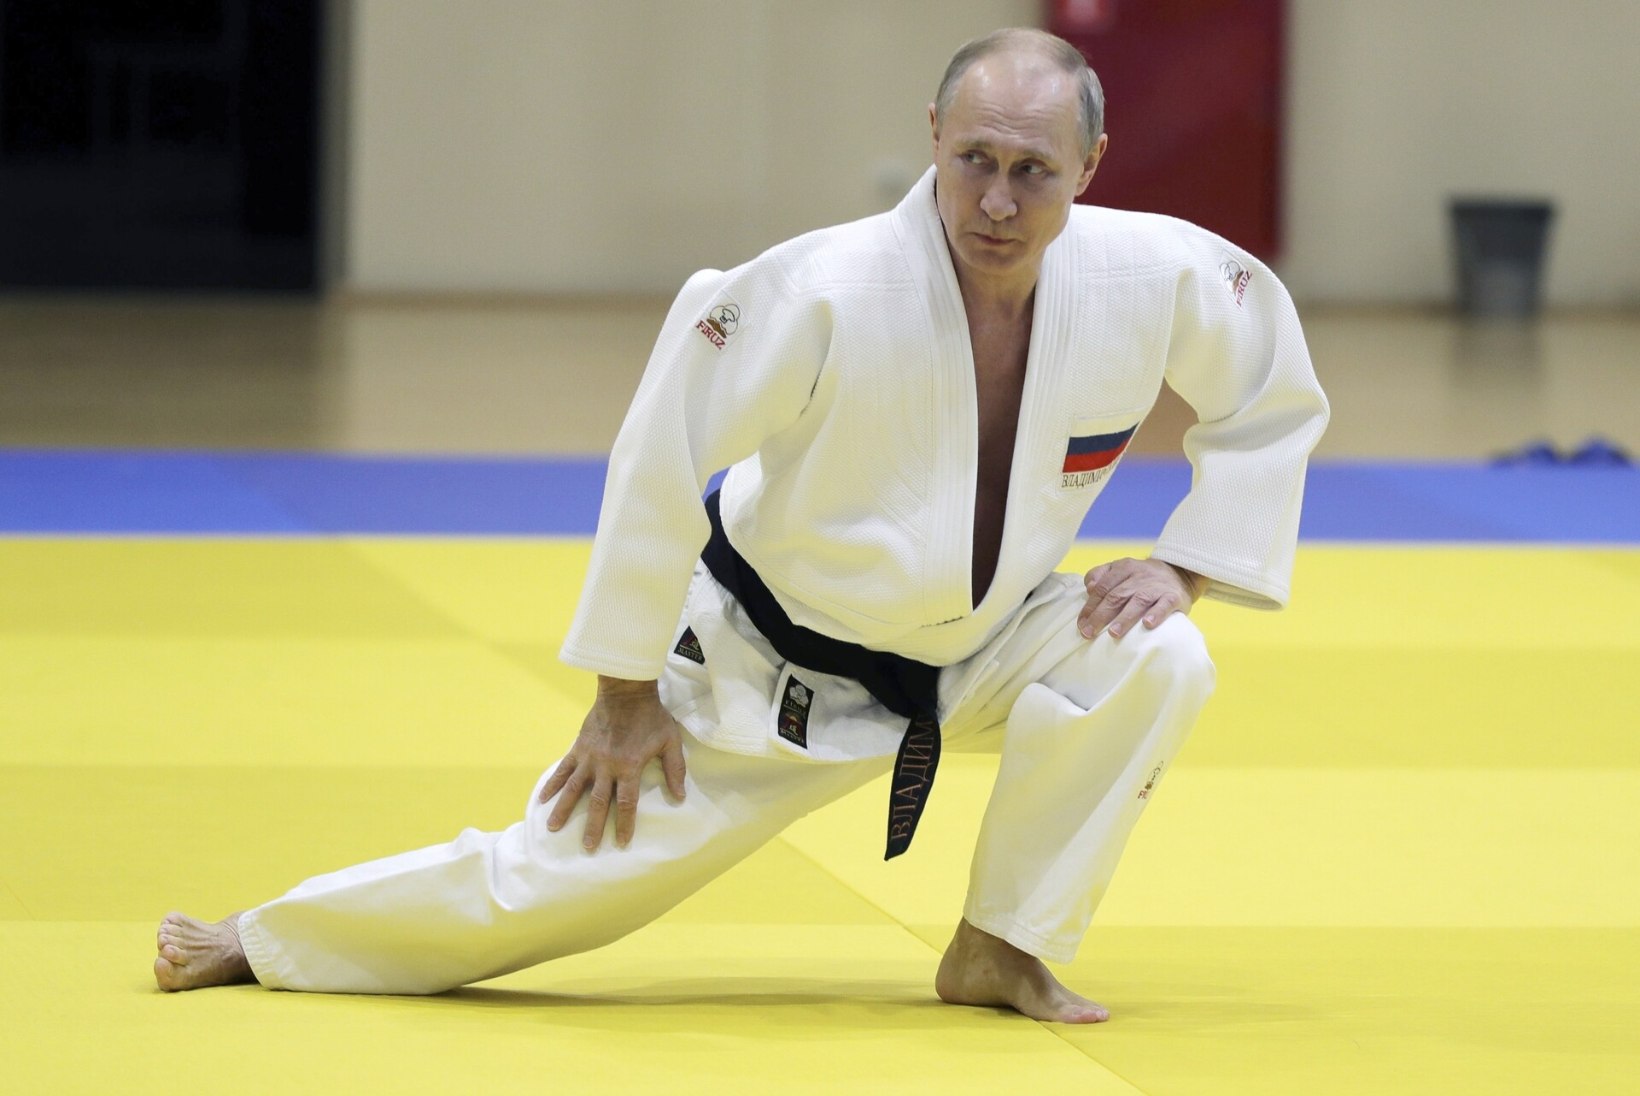 Rahvusvaheline judoliit võttis Putinilt autiitli